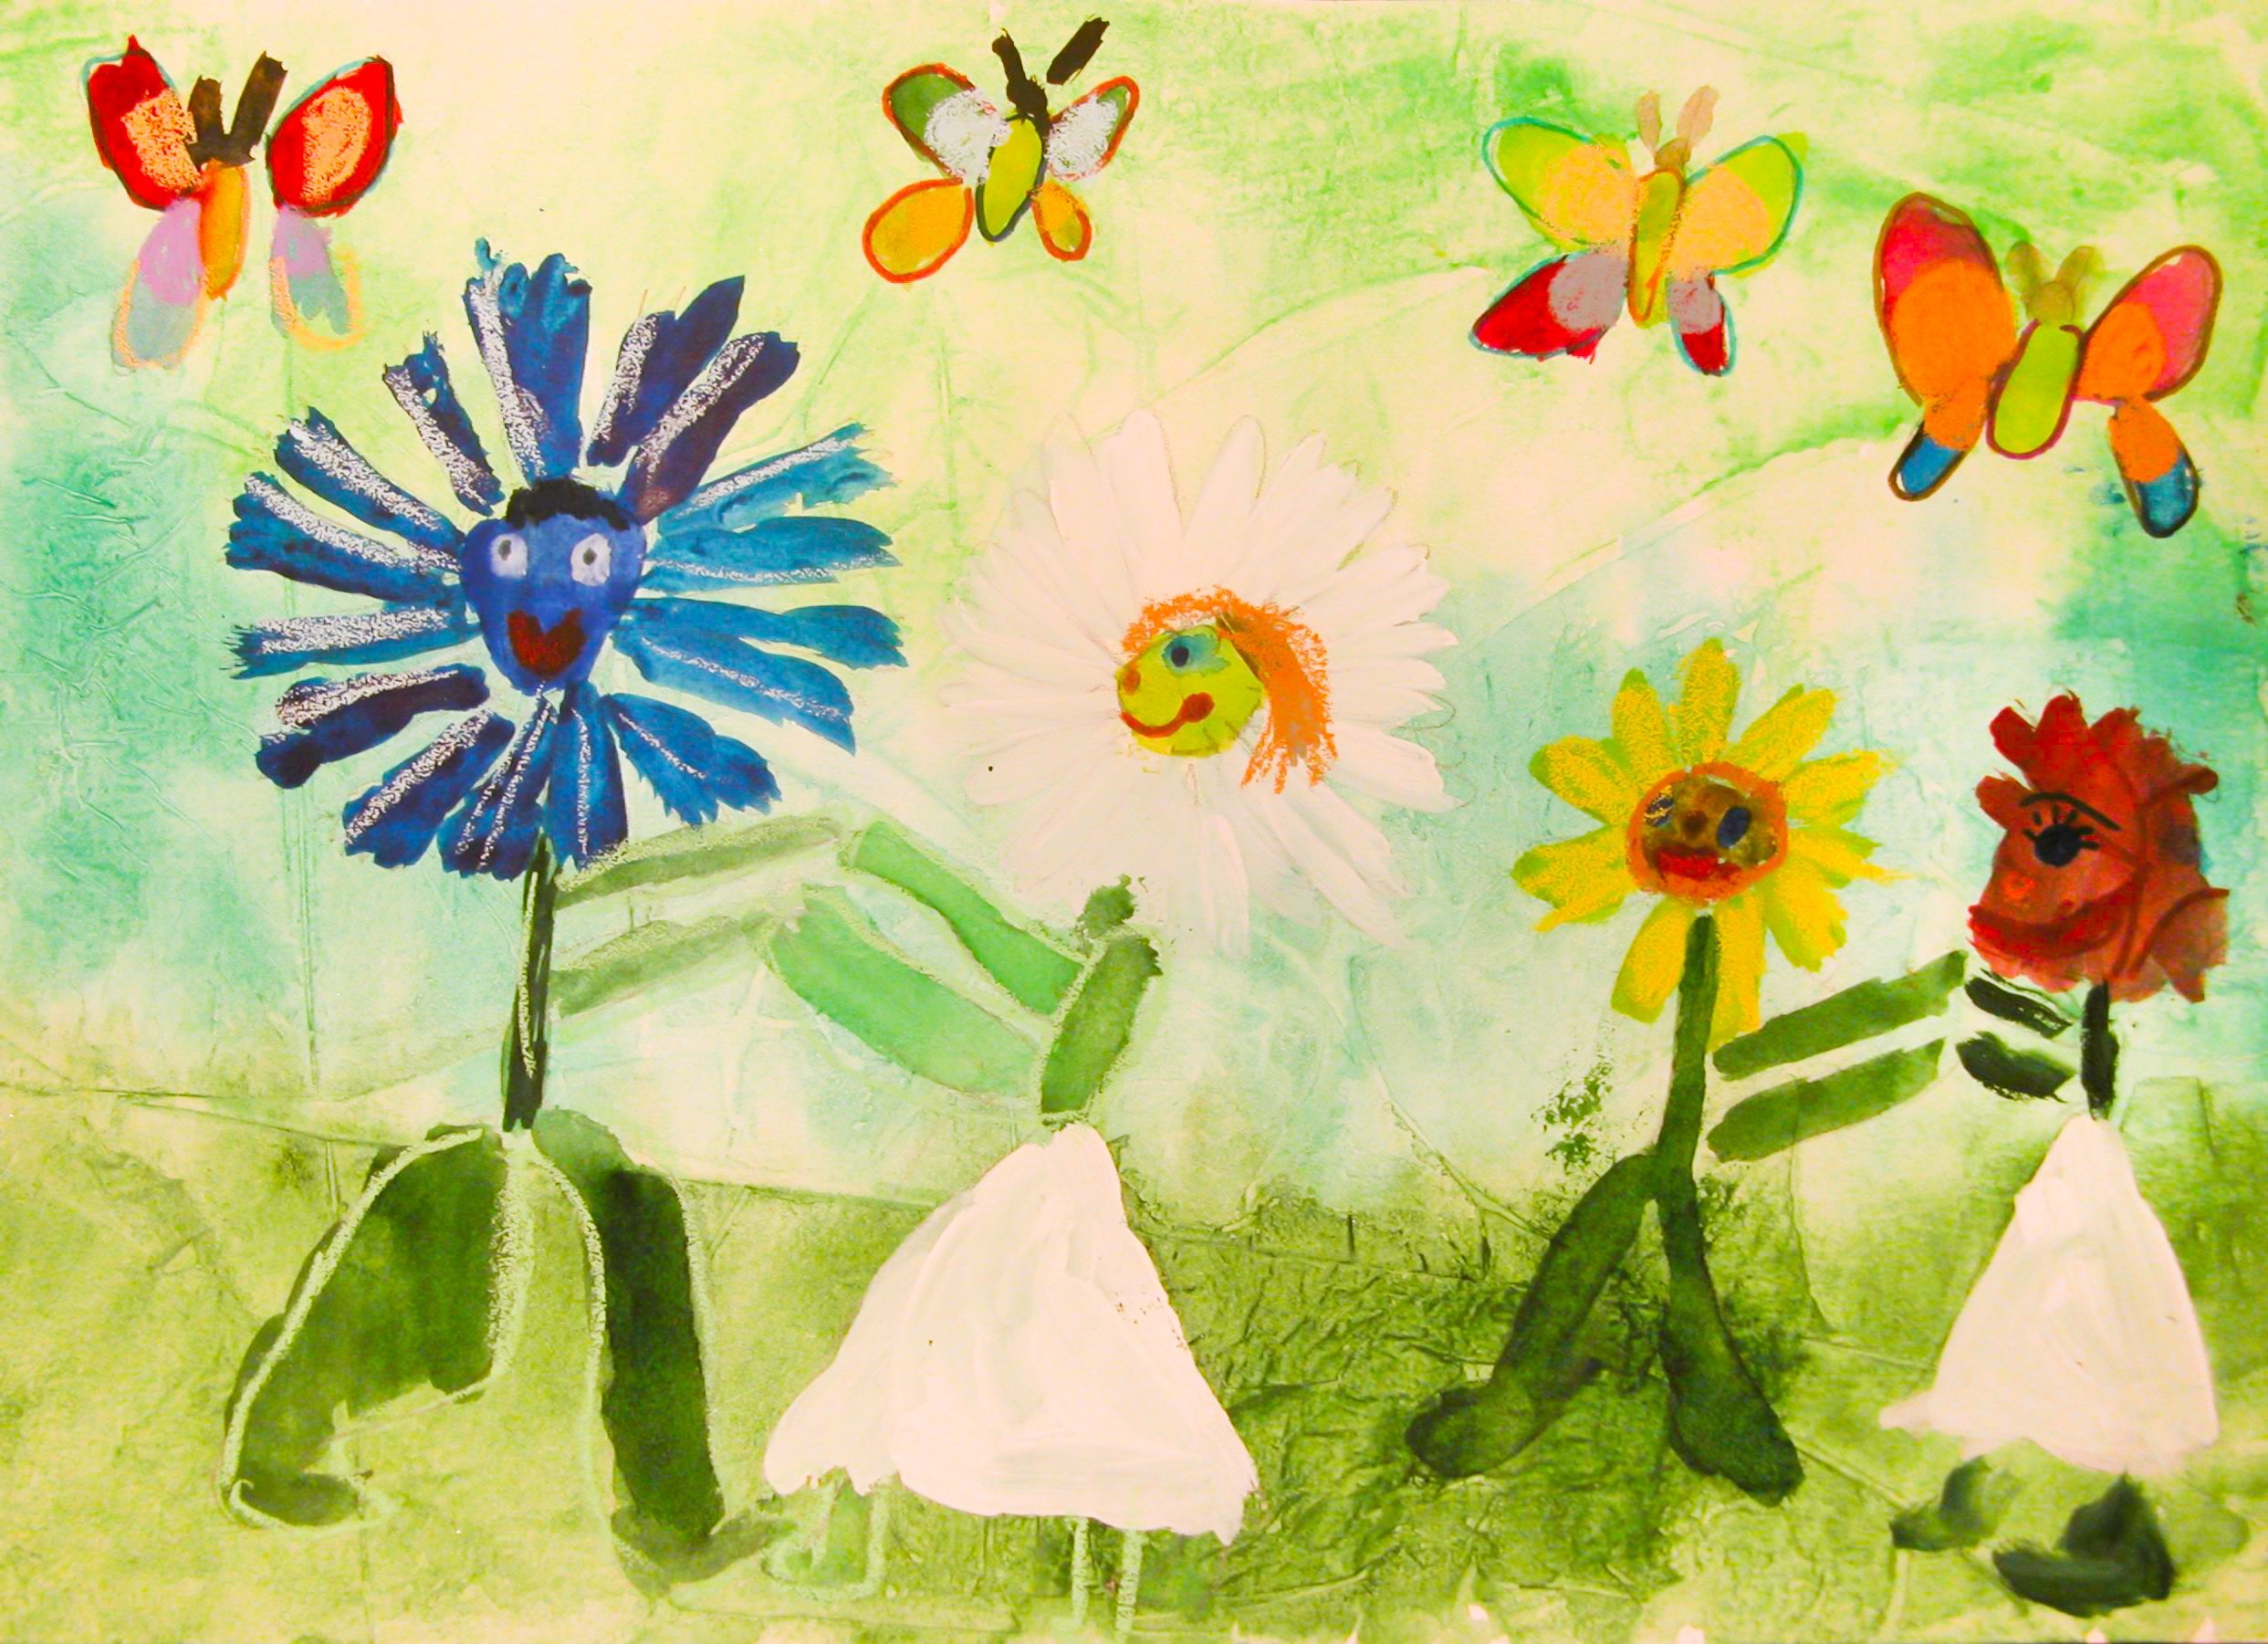 Цветок рисунок для детей